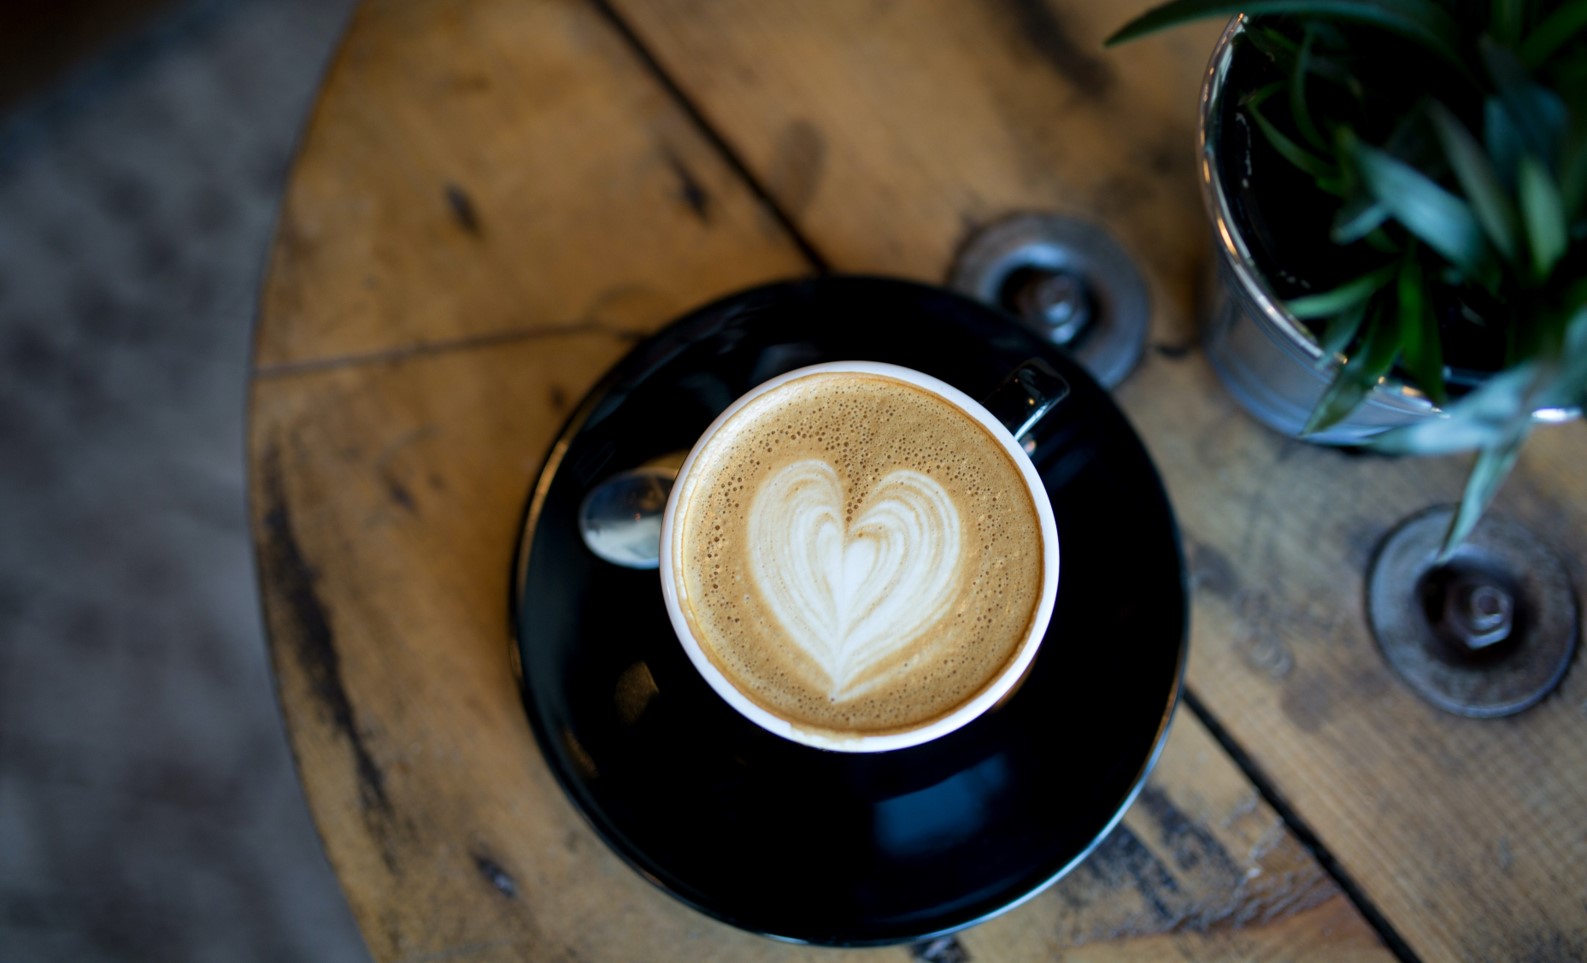 Latte coffee with heart in the foam